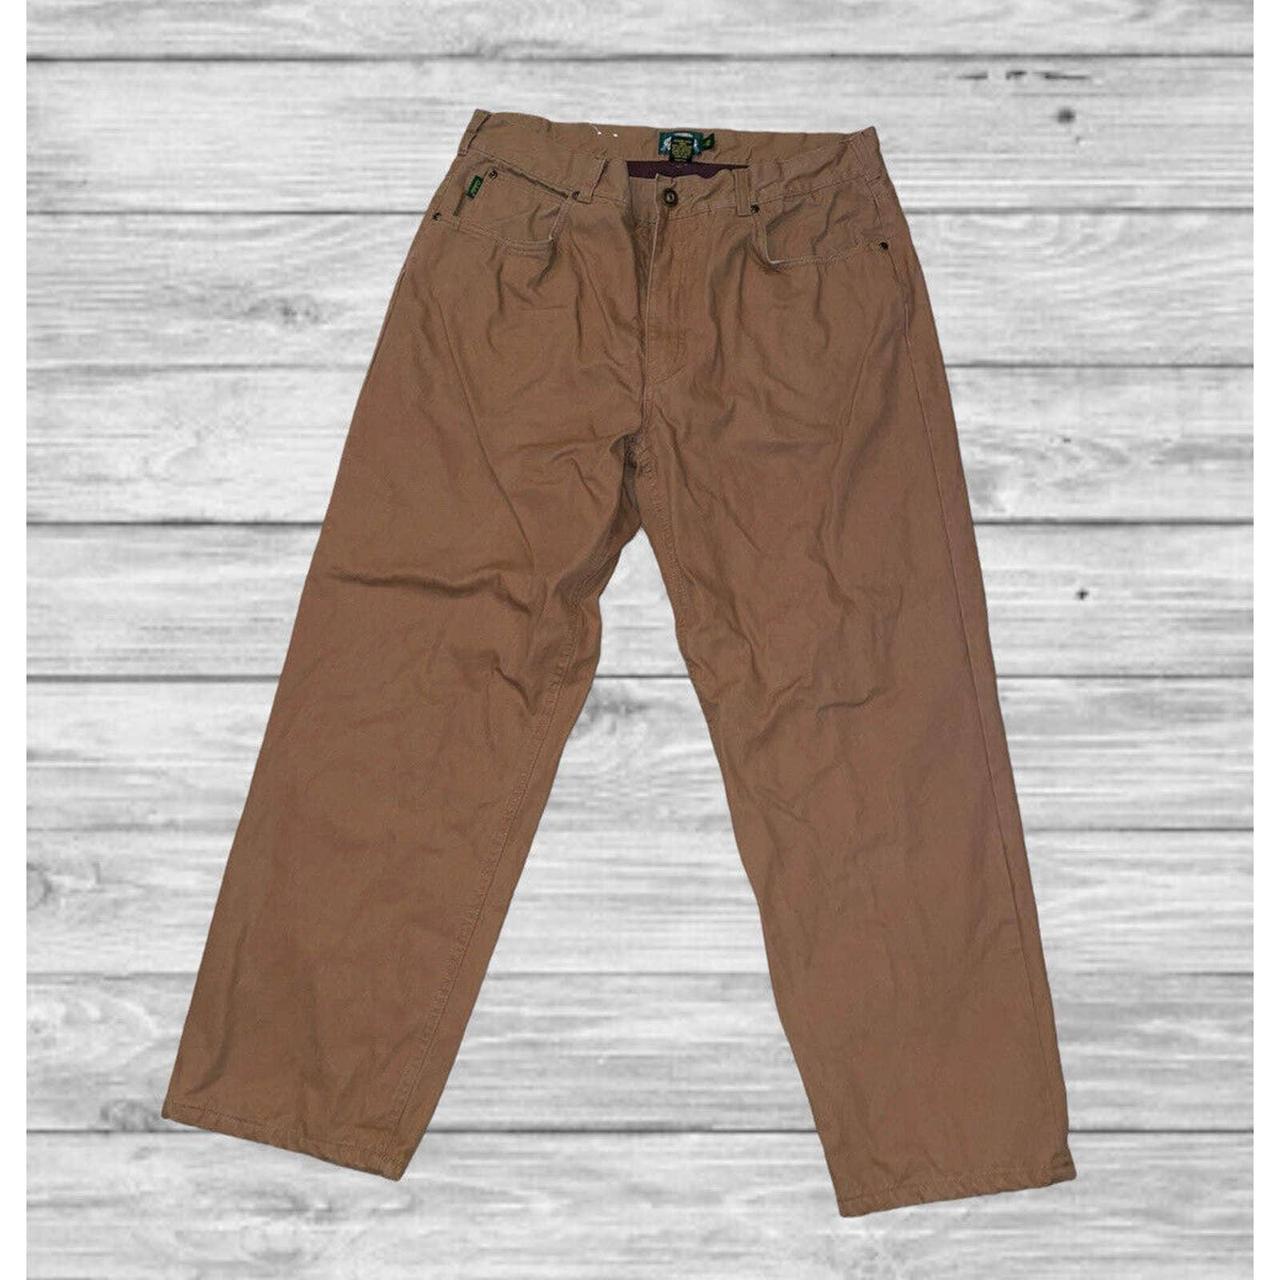 Cabela’s Men’s Flannel Lined Heavy Duty Pants 38/30